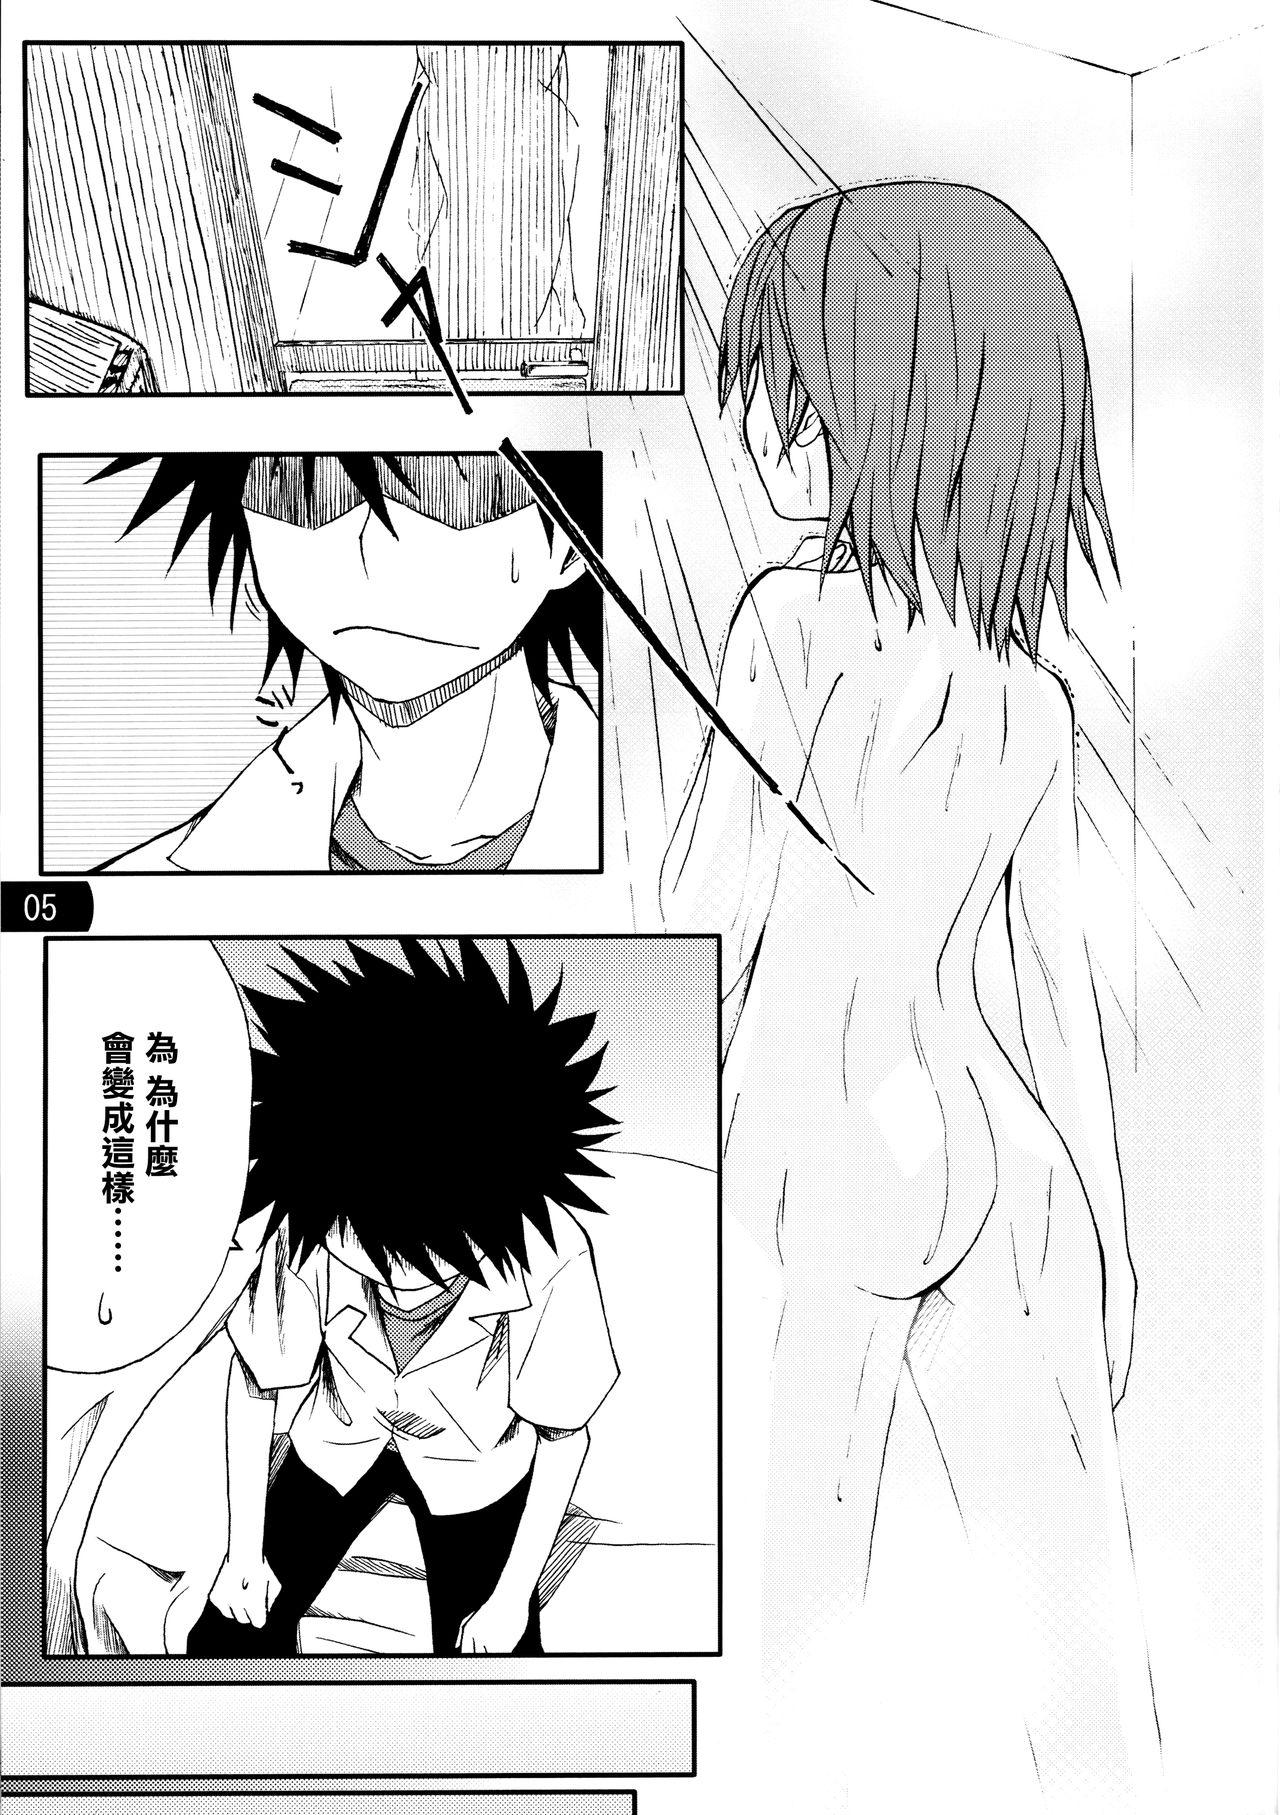 Naked Sluts Toaru mousou no chou denji hon 02 - Toaru kagaku no railgun Glam - Page 4